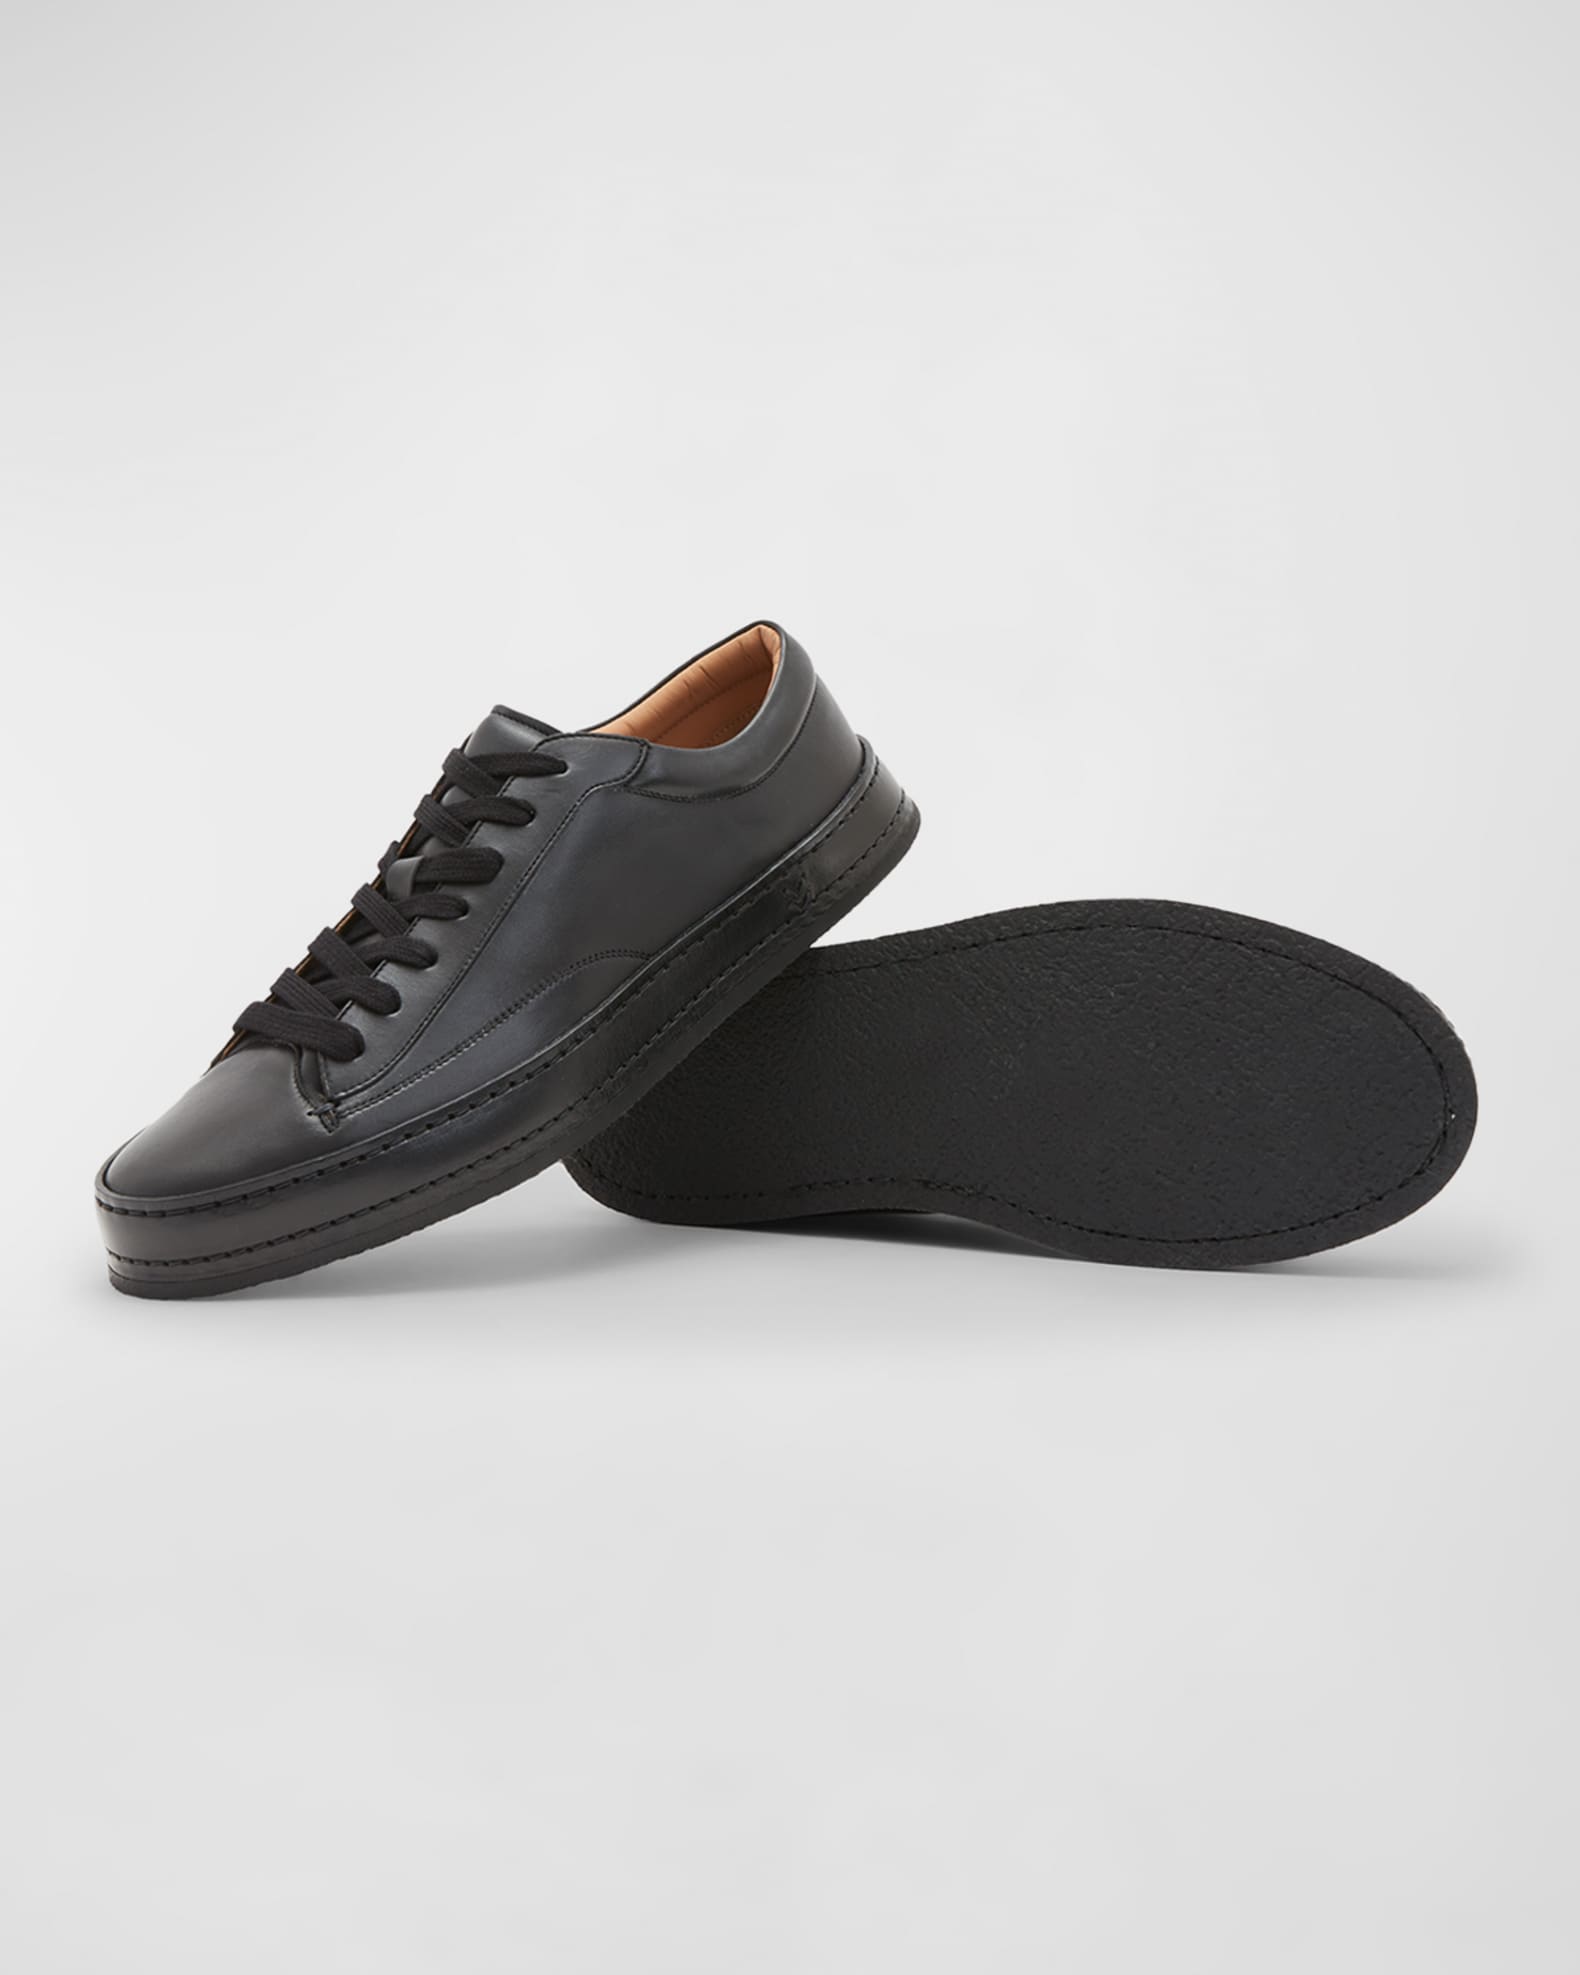 John Varvatos Men's Wooster Artisan Low-Top Leather Sneakers | Neiman ...